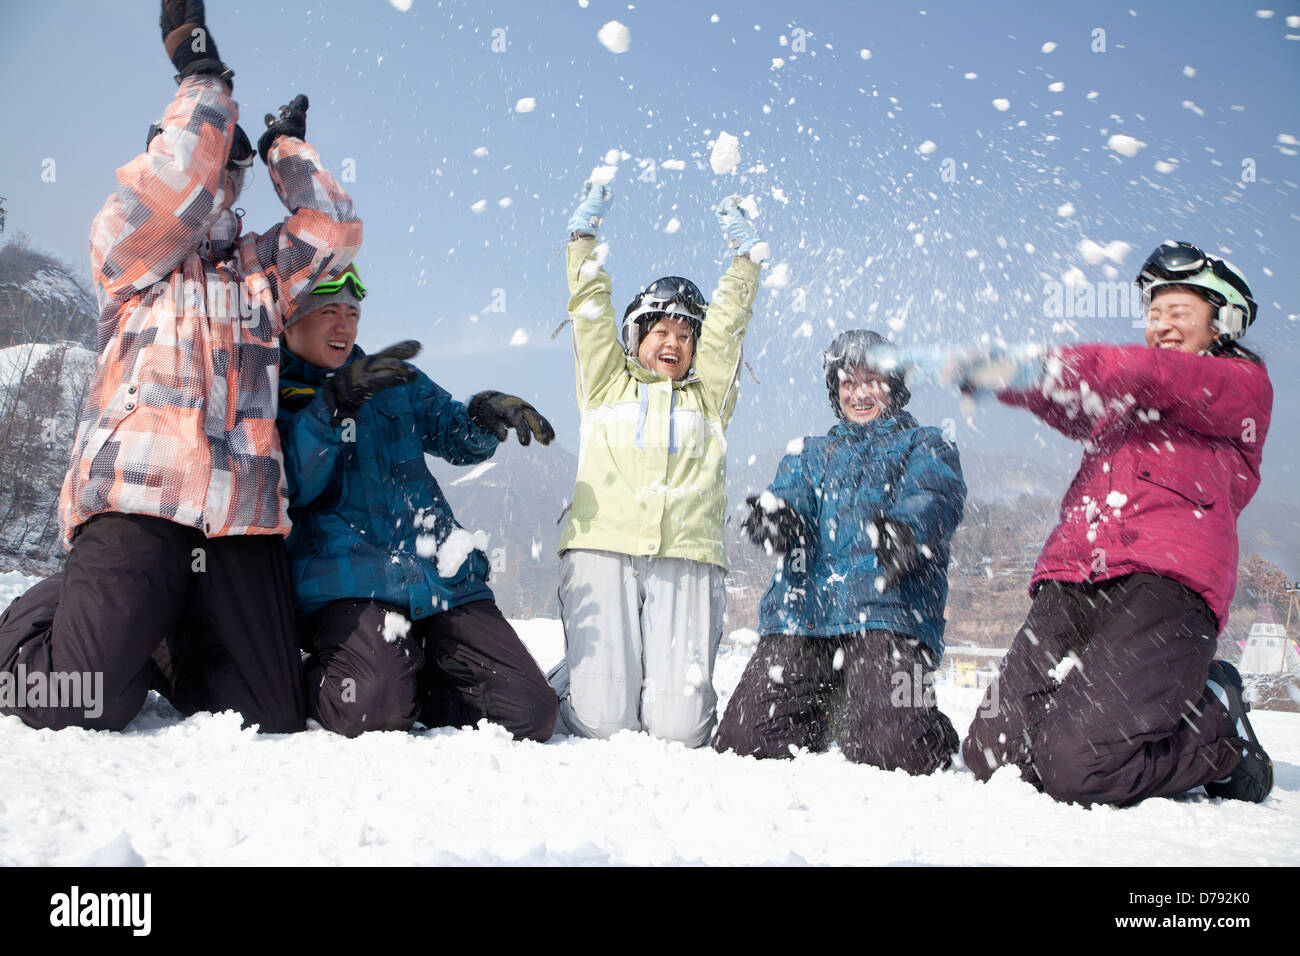 Играть в снежки кататься. Люди играют в снежки. Игра в снежки семья. Игра в снежки по взрослому. Играть в снежки.